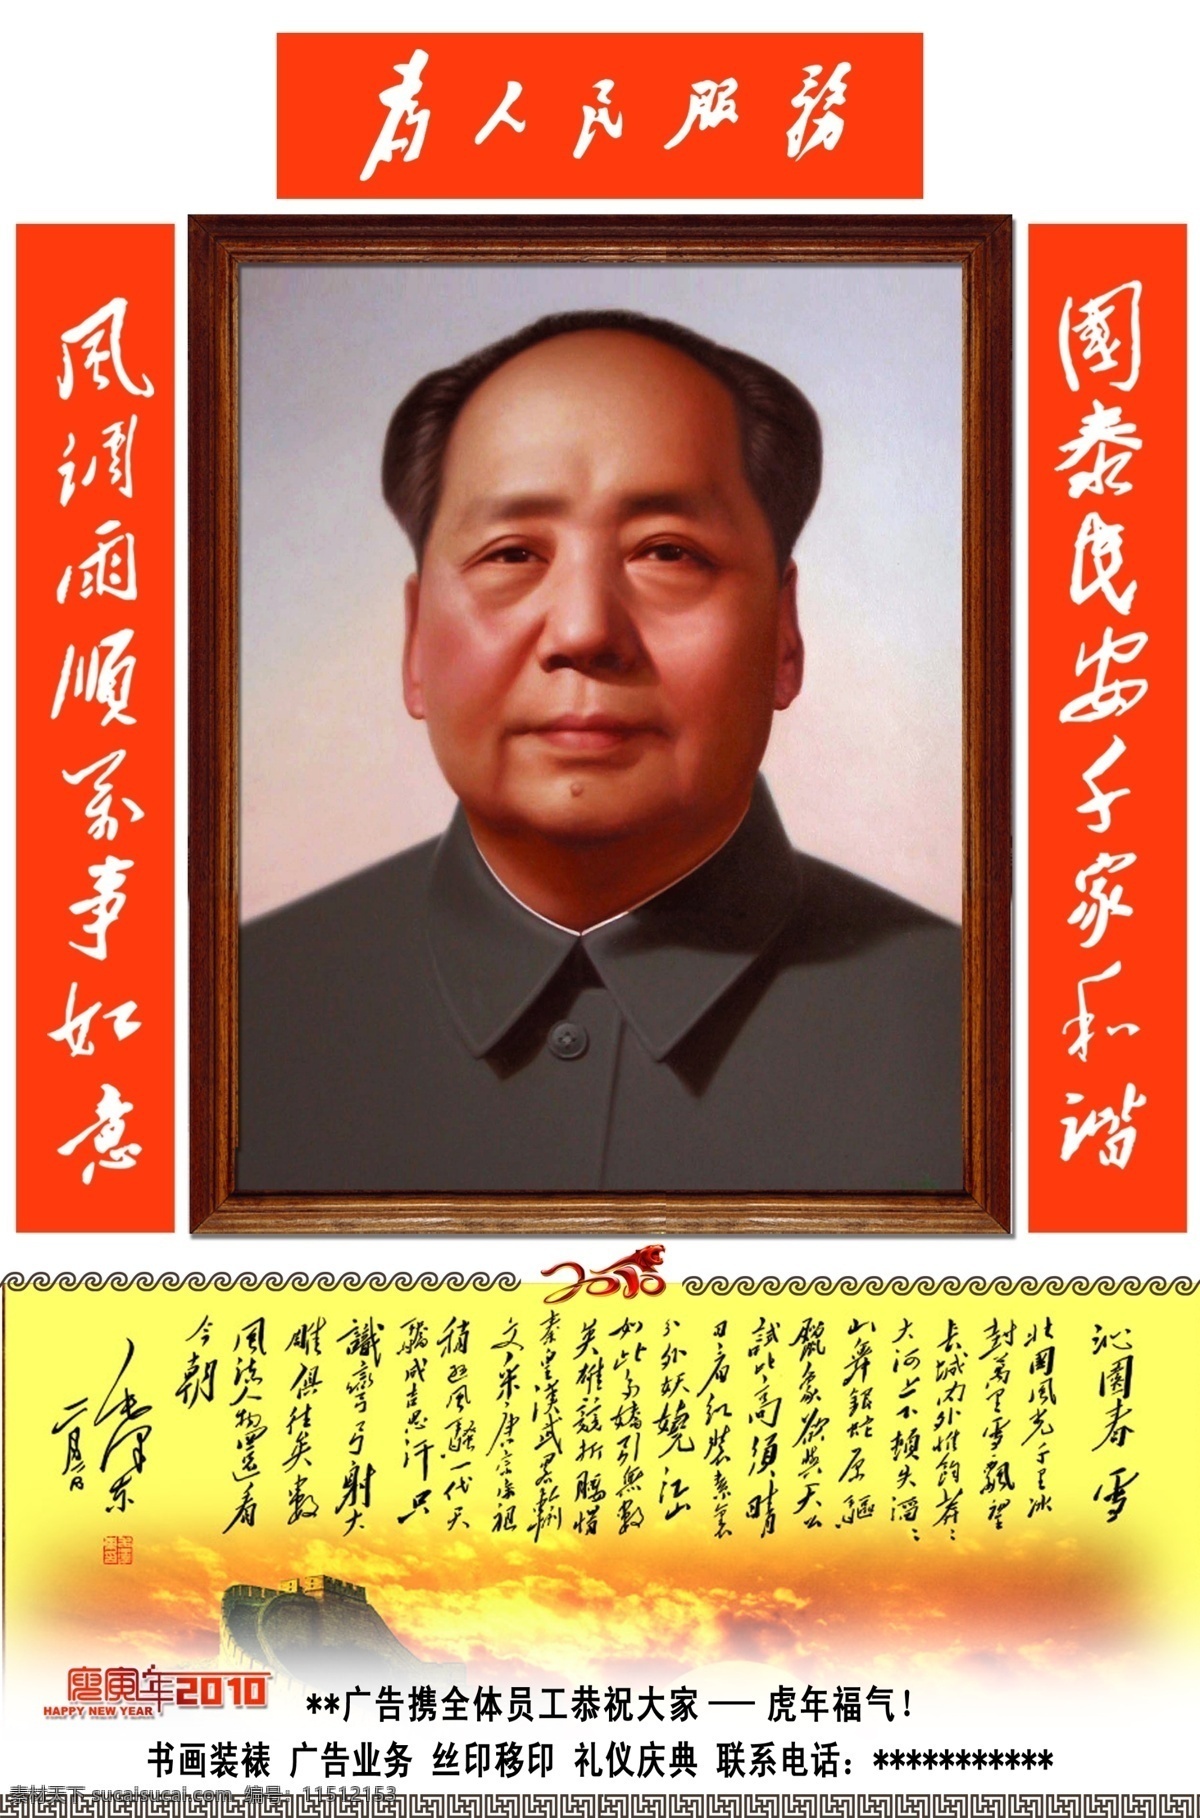 毛主席 主席 毛泽东 书法 毛泽东书法 沁园春雪 纪念品 毛泽东字体 对联 国内广告设计 广告设计模板 源文件